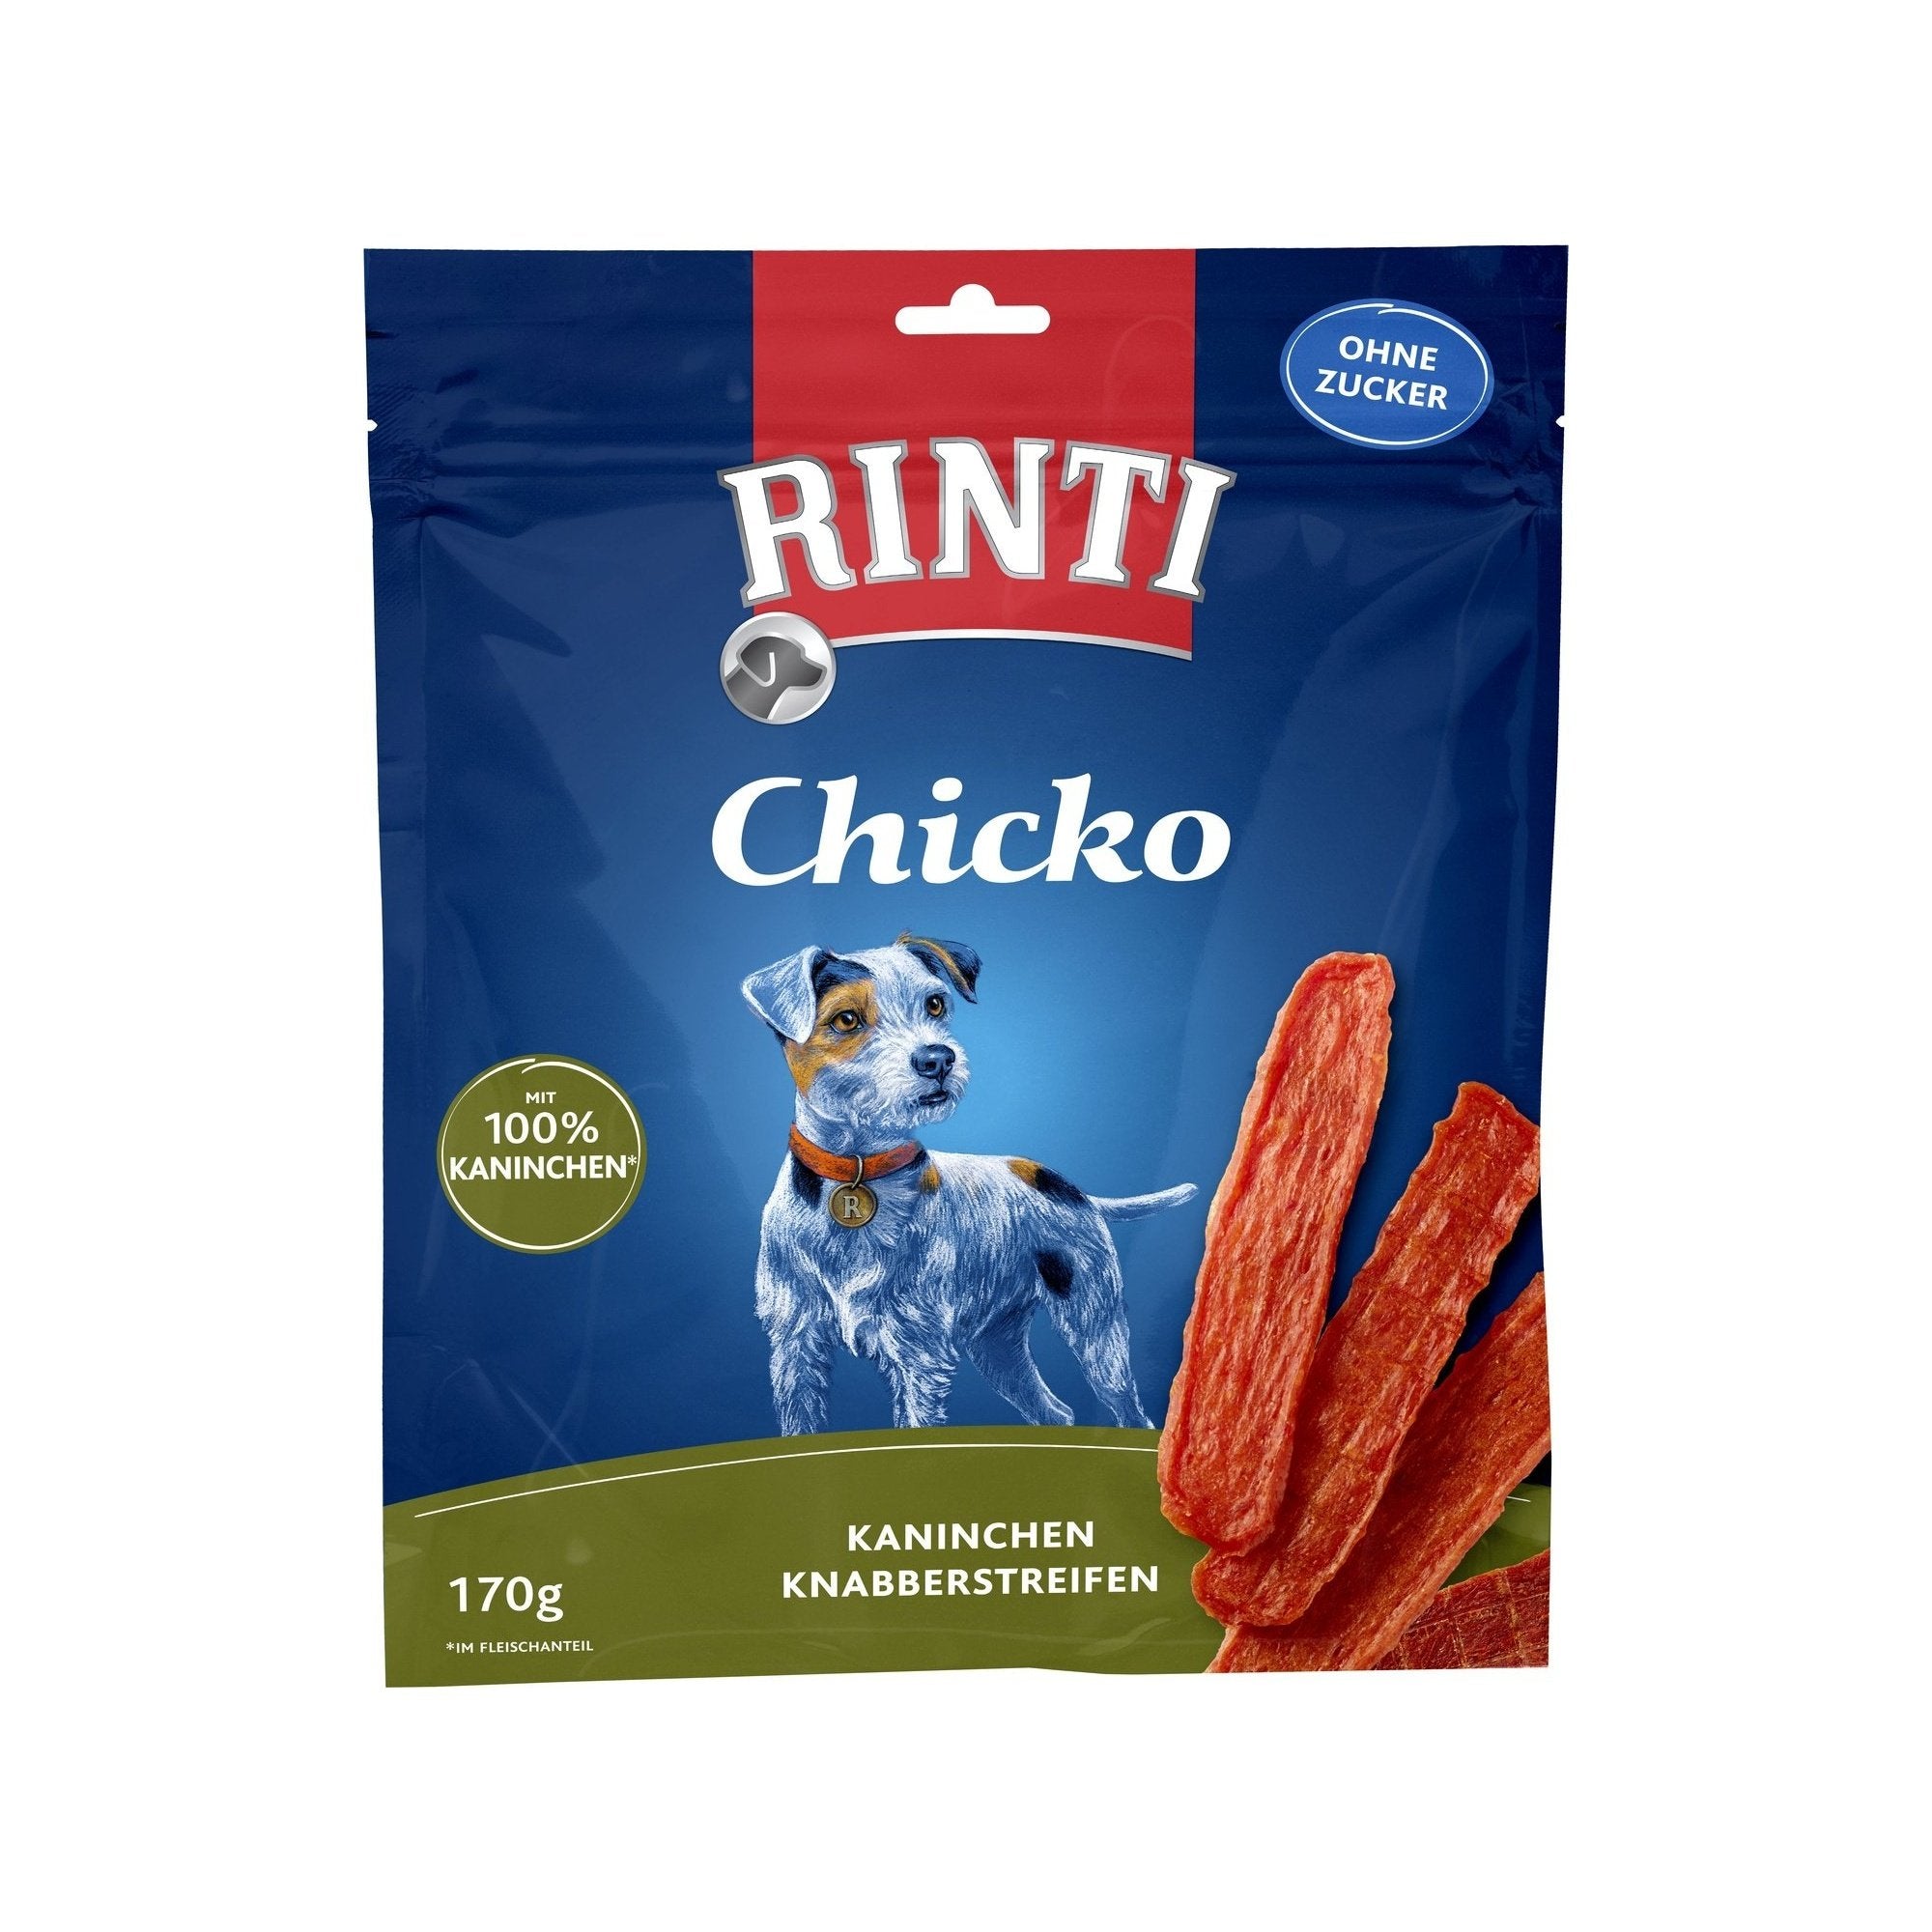 Rinti Snack Chicko Kaninchen - zoo.de